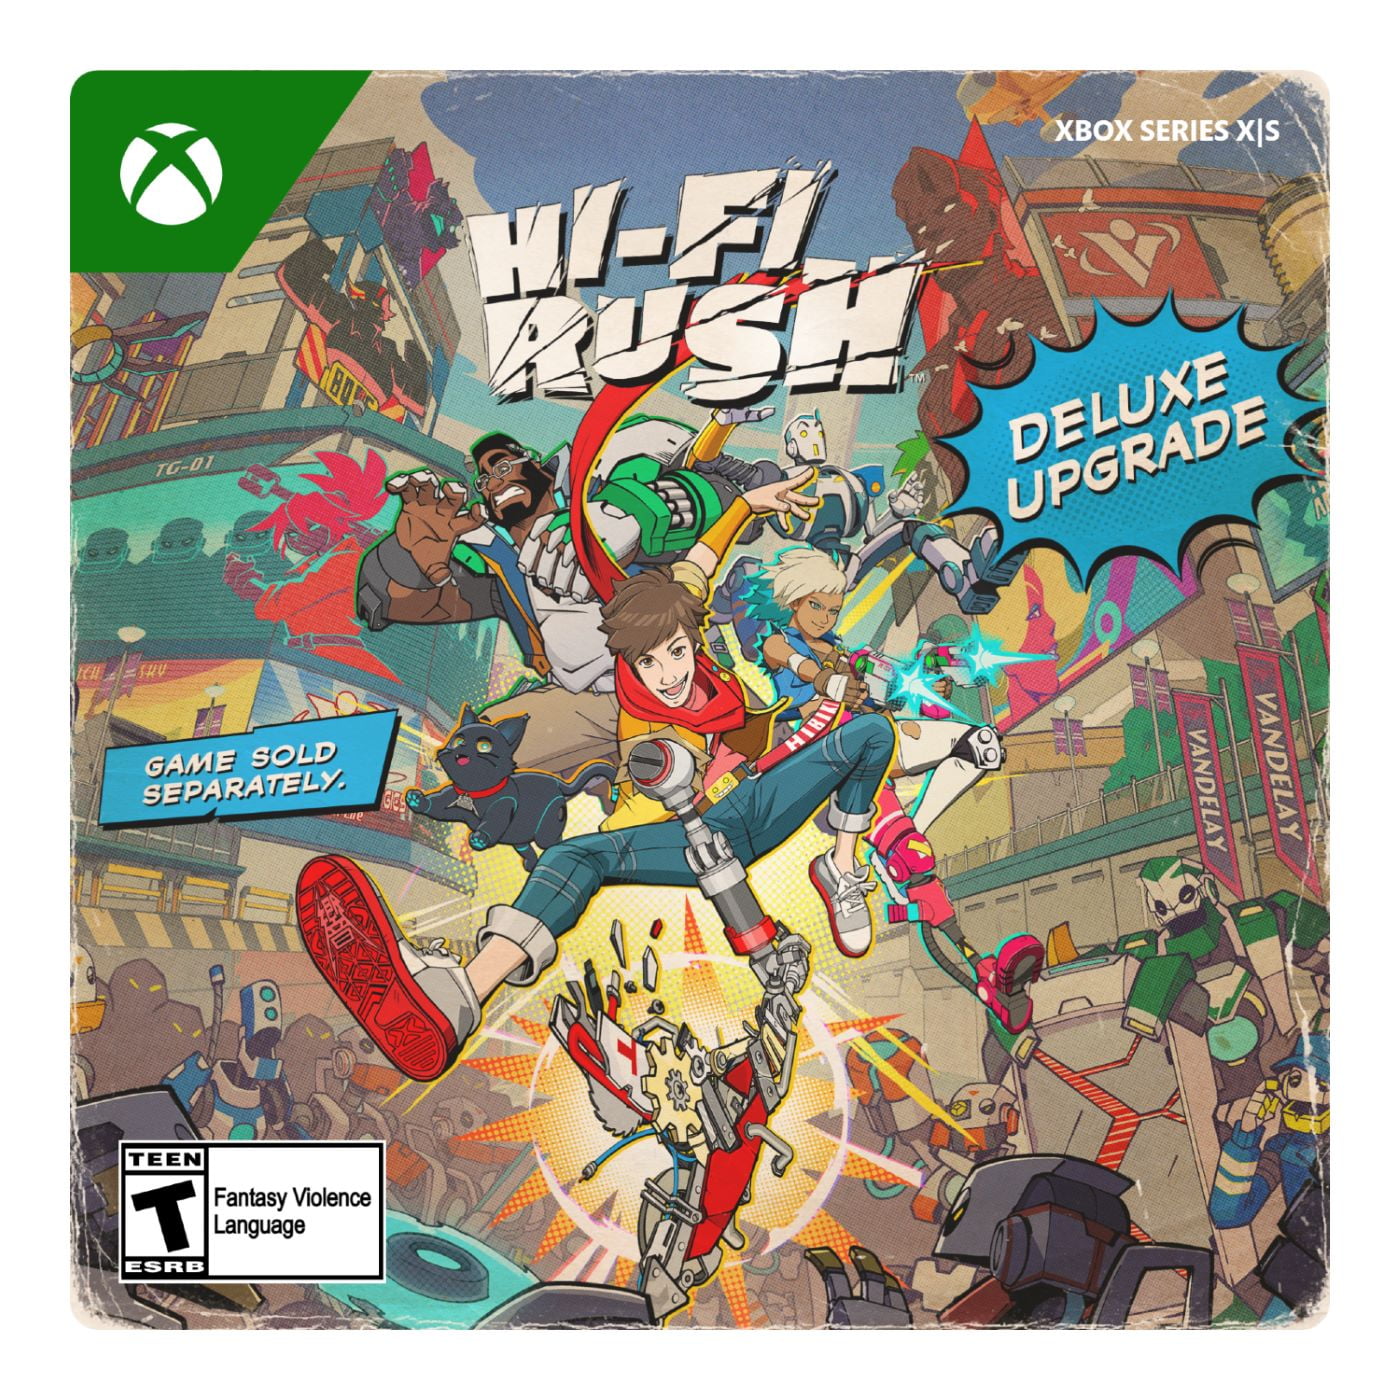 Hi-Fi Rush': novo jogo da Xbox surpreende neste começo de ano